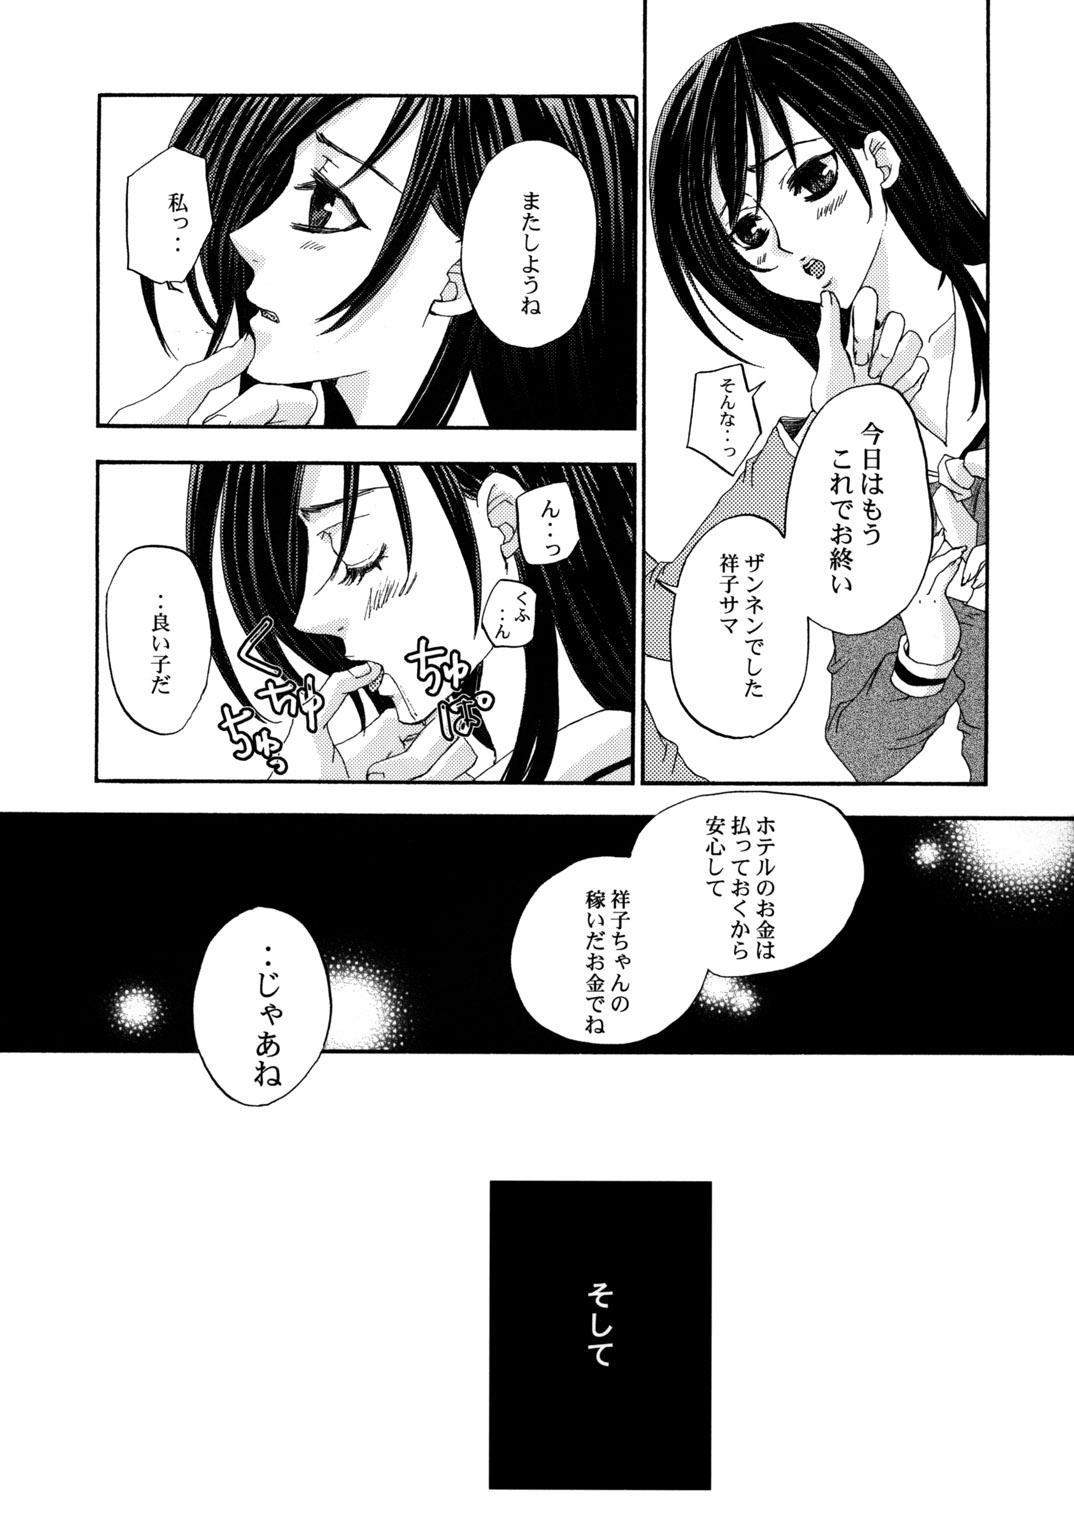 Perfect Body Porn Himitsu no Hanazono 3 | Secret the garden of a flower 3 - Maria sama ga miteru Straight - Page 8